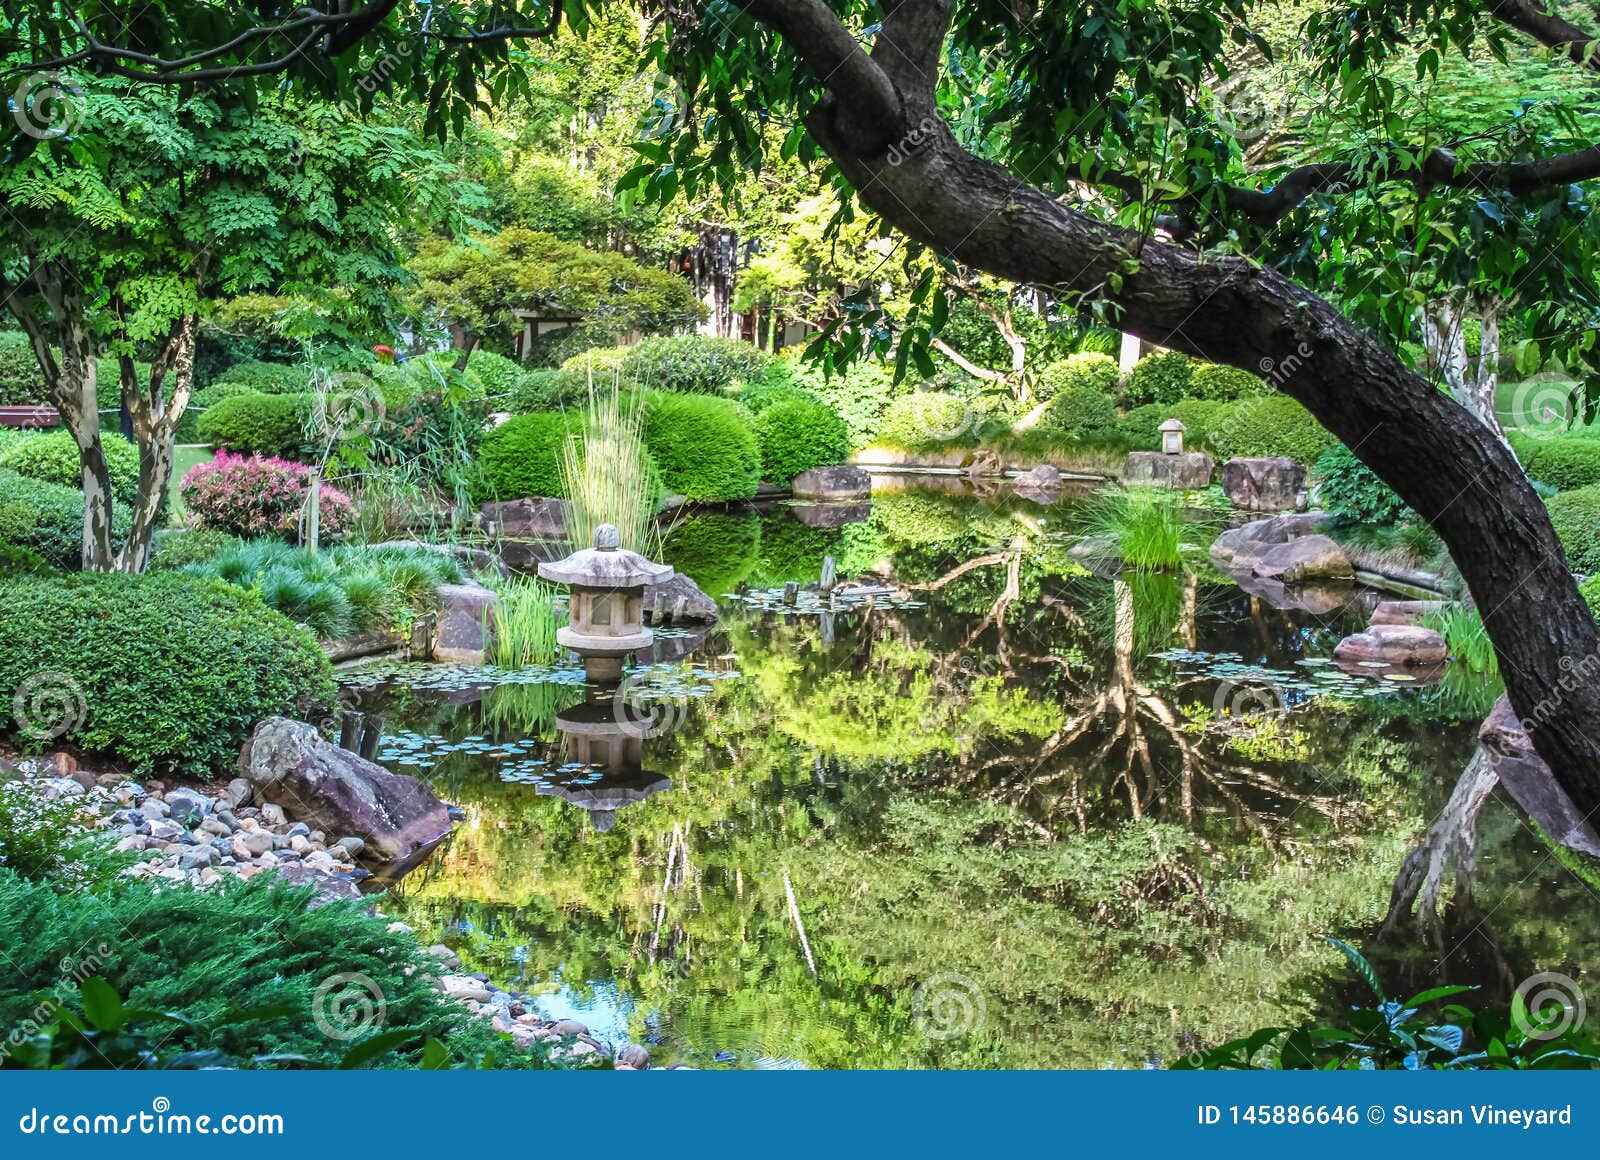 美丽的东方花园 有小小的水泥庙 池塘 倒映着树和百合花垫 精挑细选库存照片 图片包括有精挑细选 美丽的东方花园 有小小的水泥庙 池塘 倒映着树和百合花垫